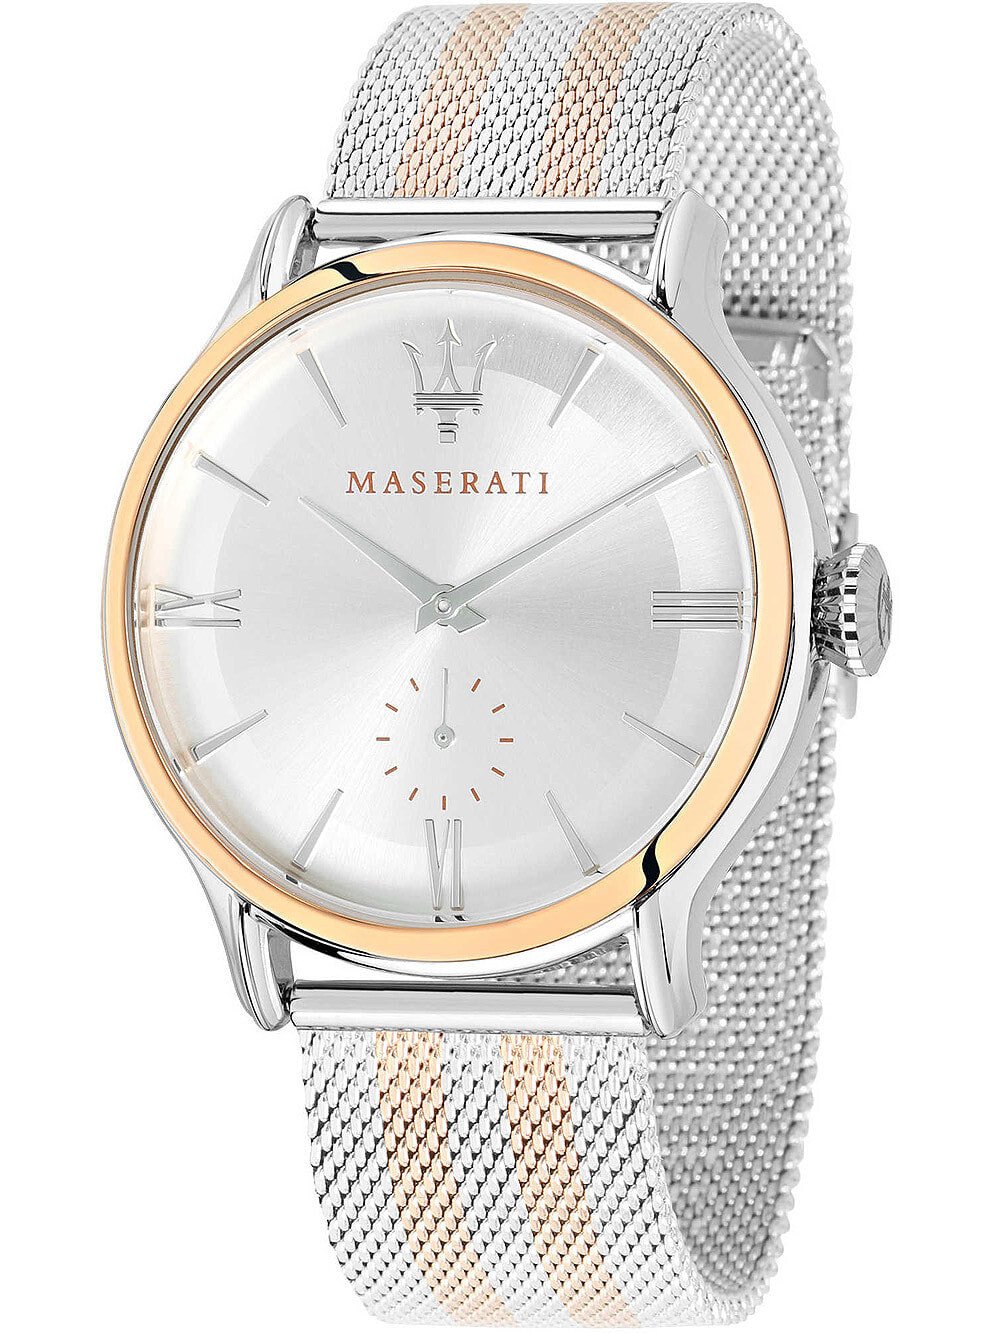 Мужские наручные часы с серебряным браслетом Maserati R8853118005 Epoca mens 42mm 10ATM